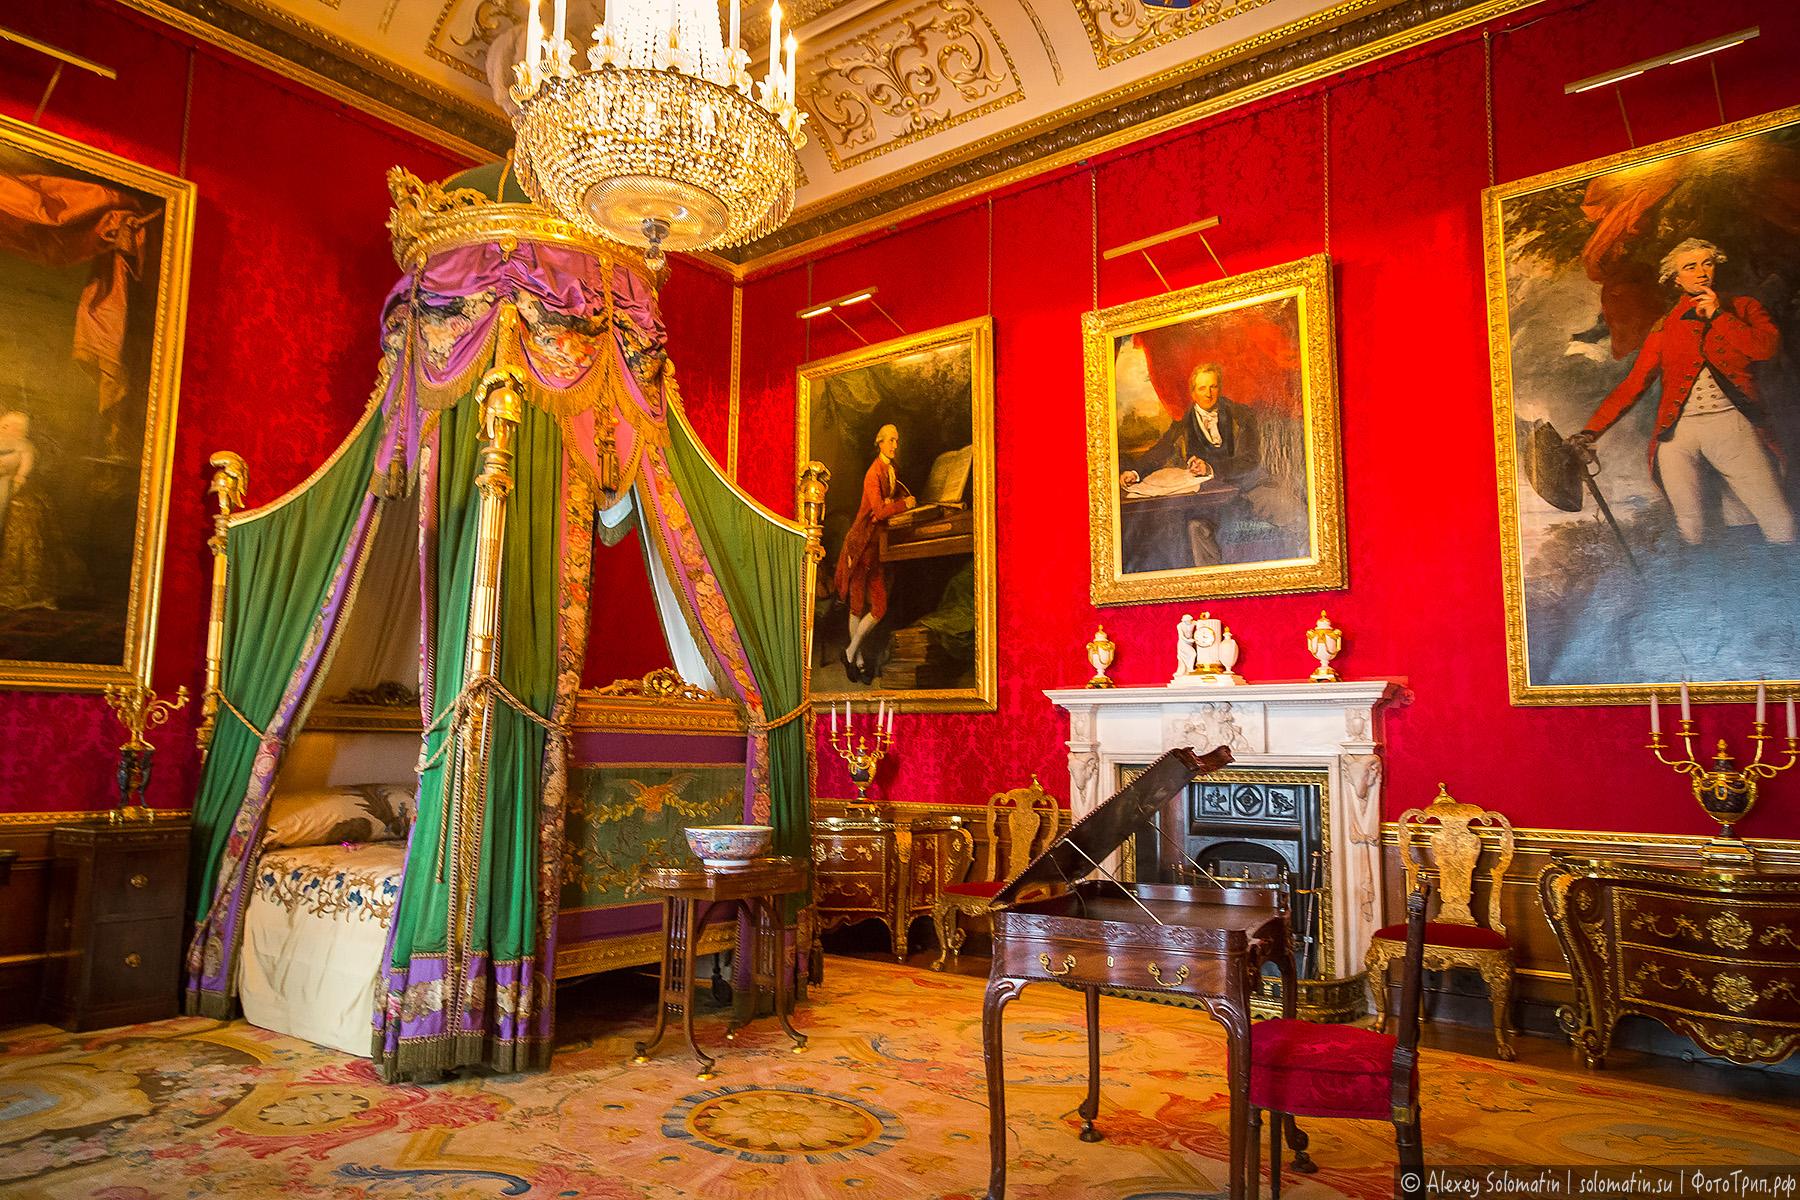 Виндзорский замок - королевская резиденция с 1000-летней историей